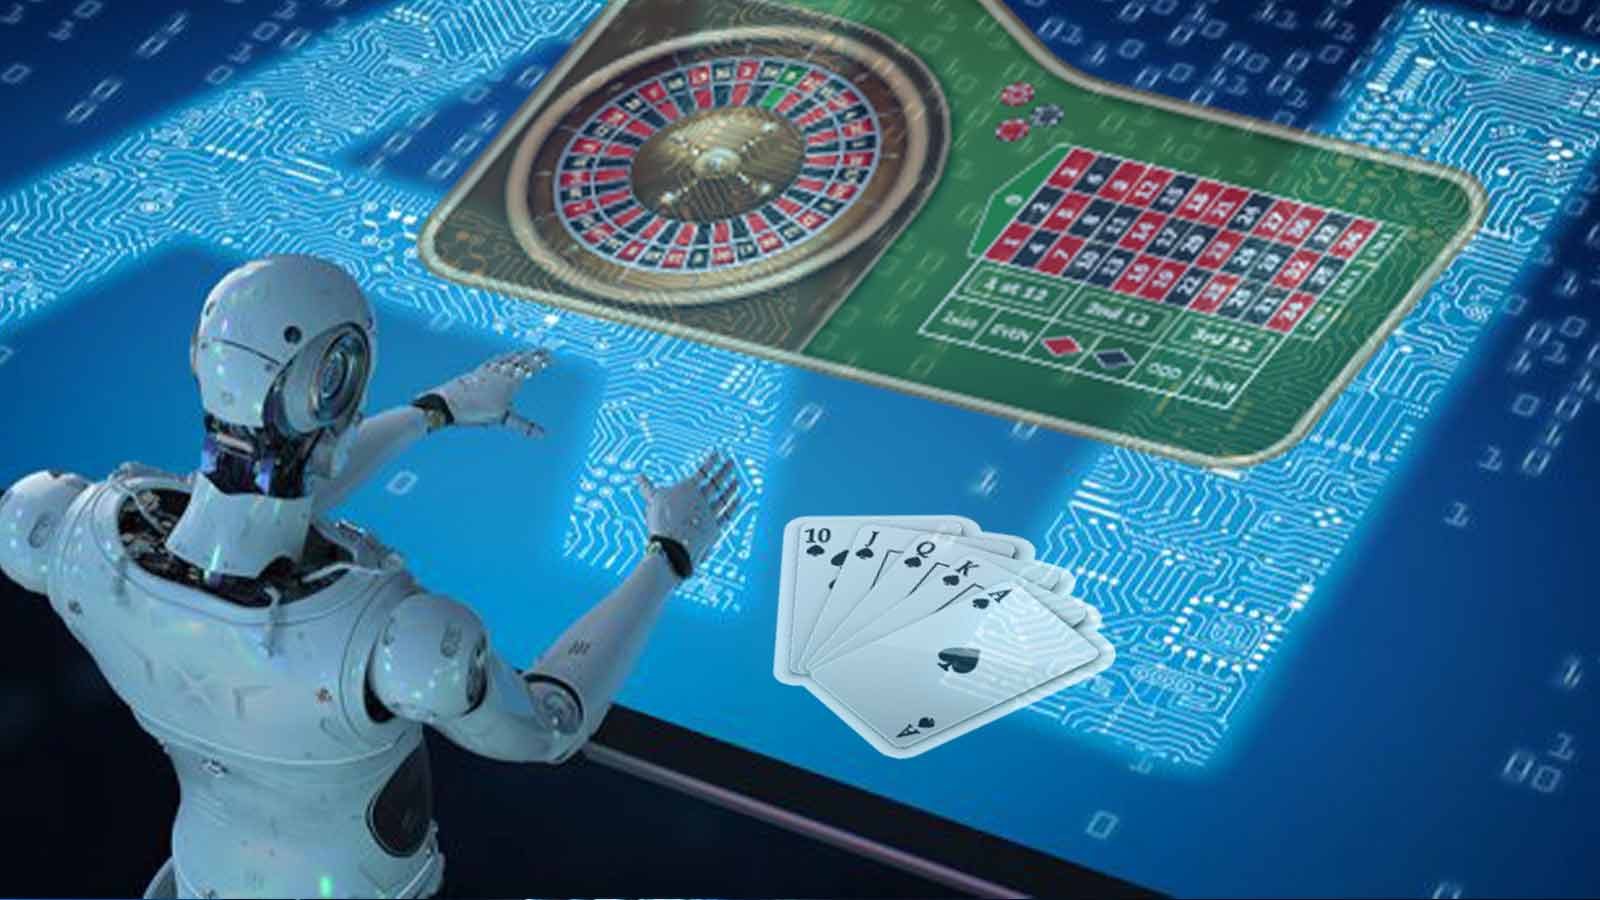 日本のオンラインカジノにおけるギャンブル依存症の検出における人工知能の役割について